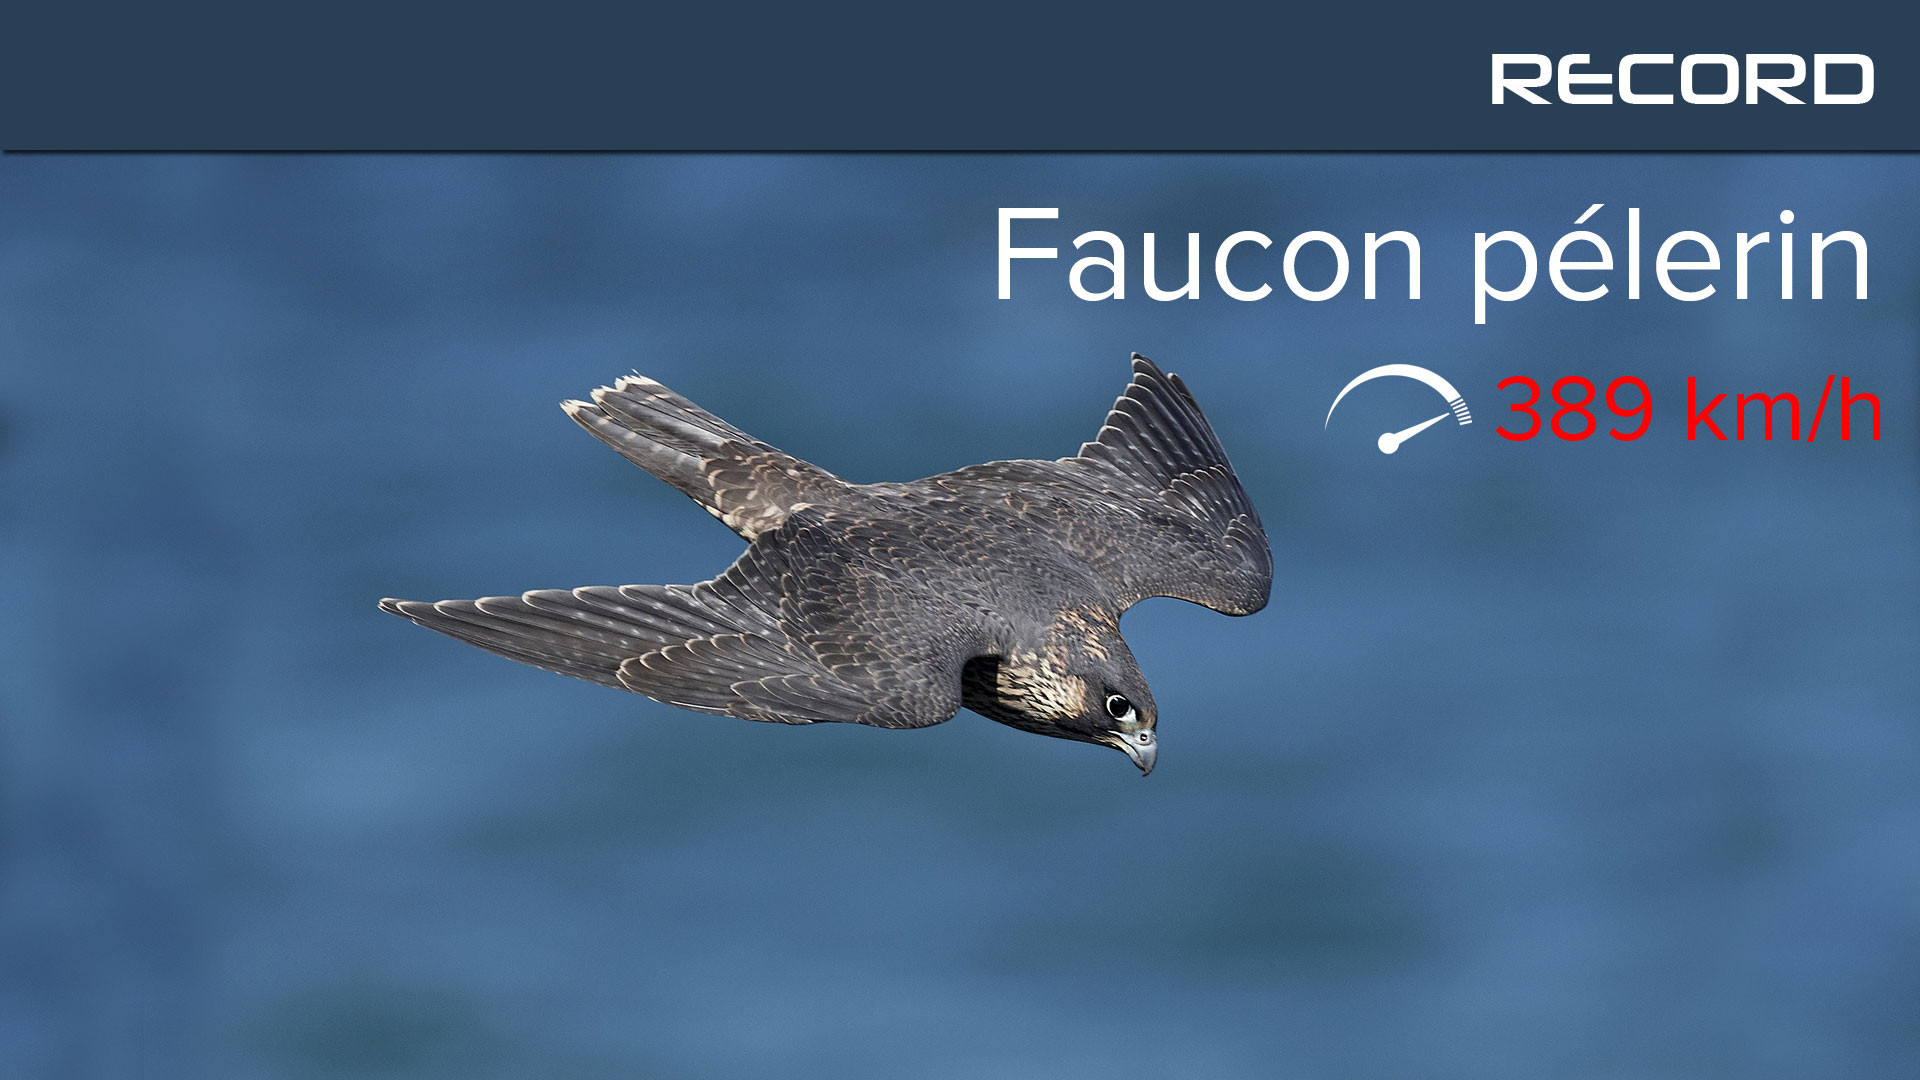 Le faucon pèlerin pointe à plus de 300 km/h